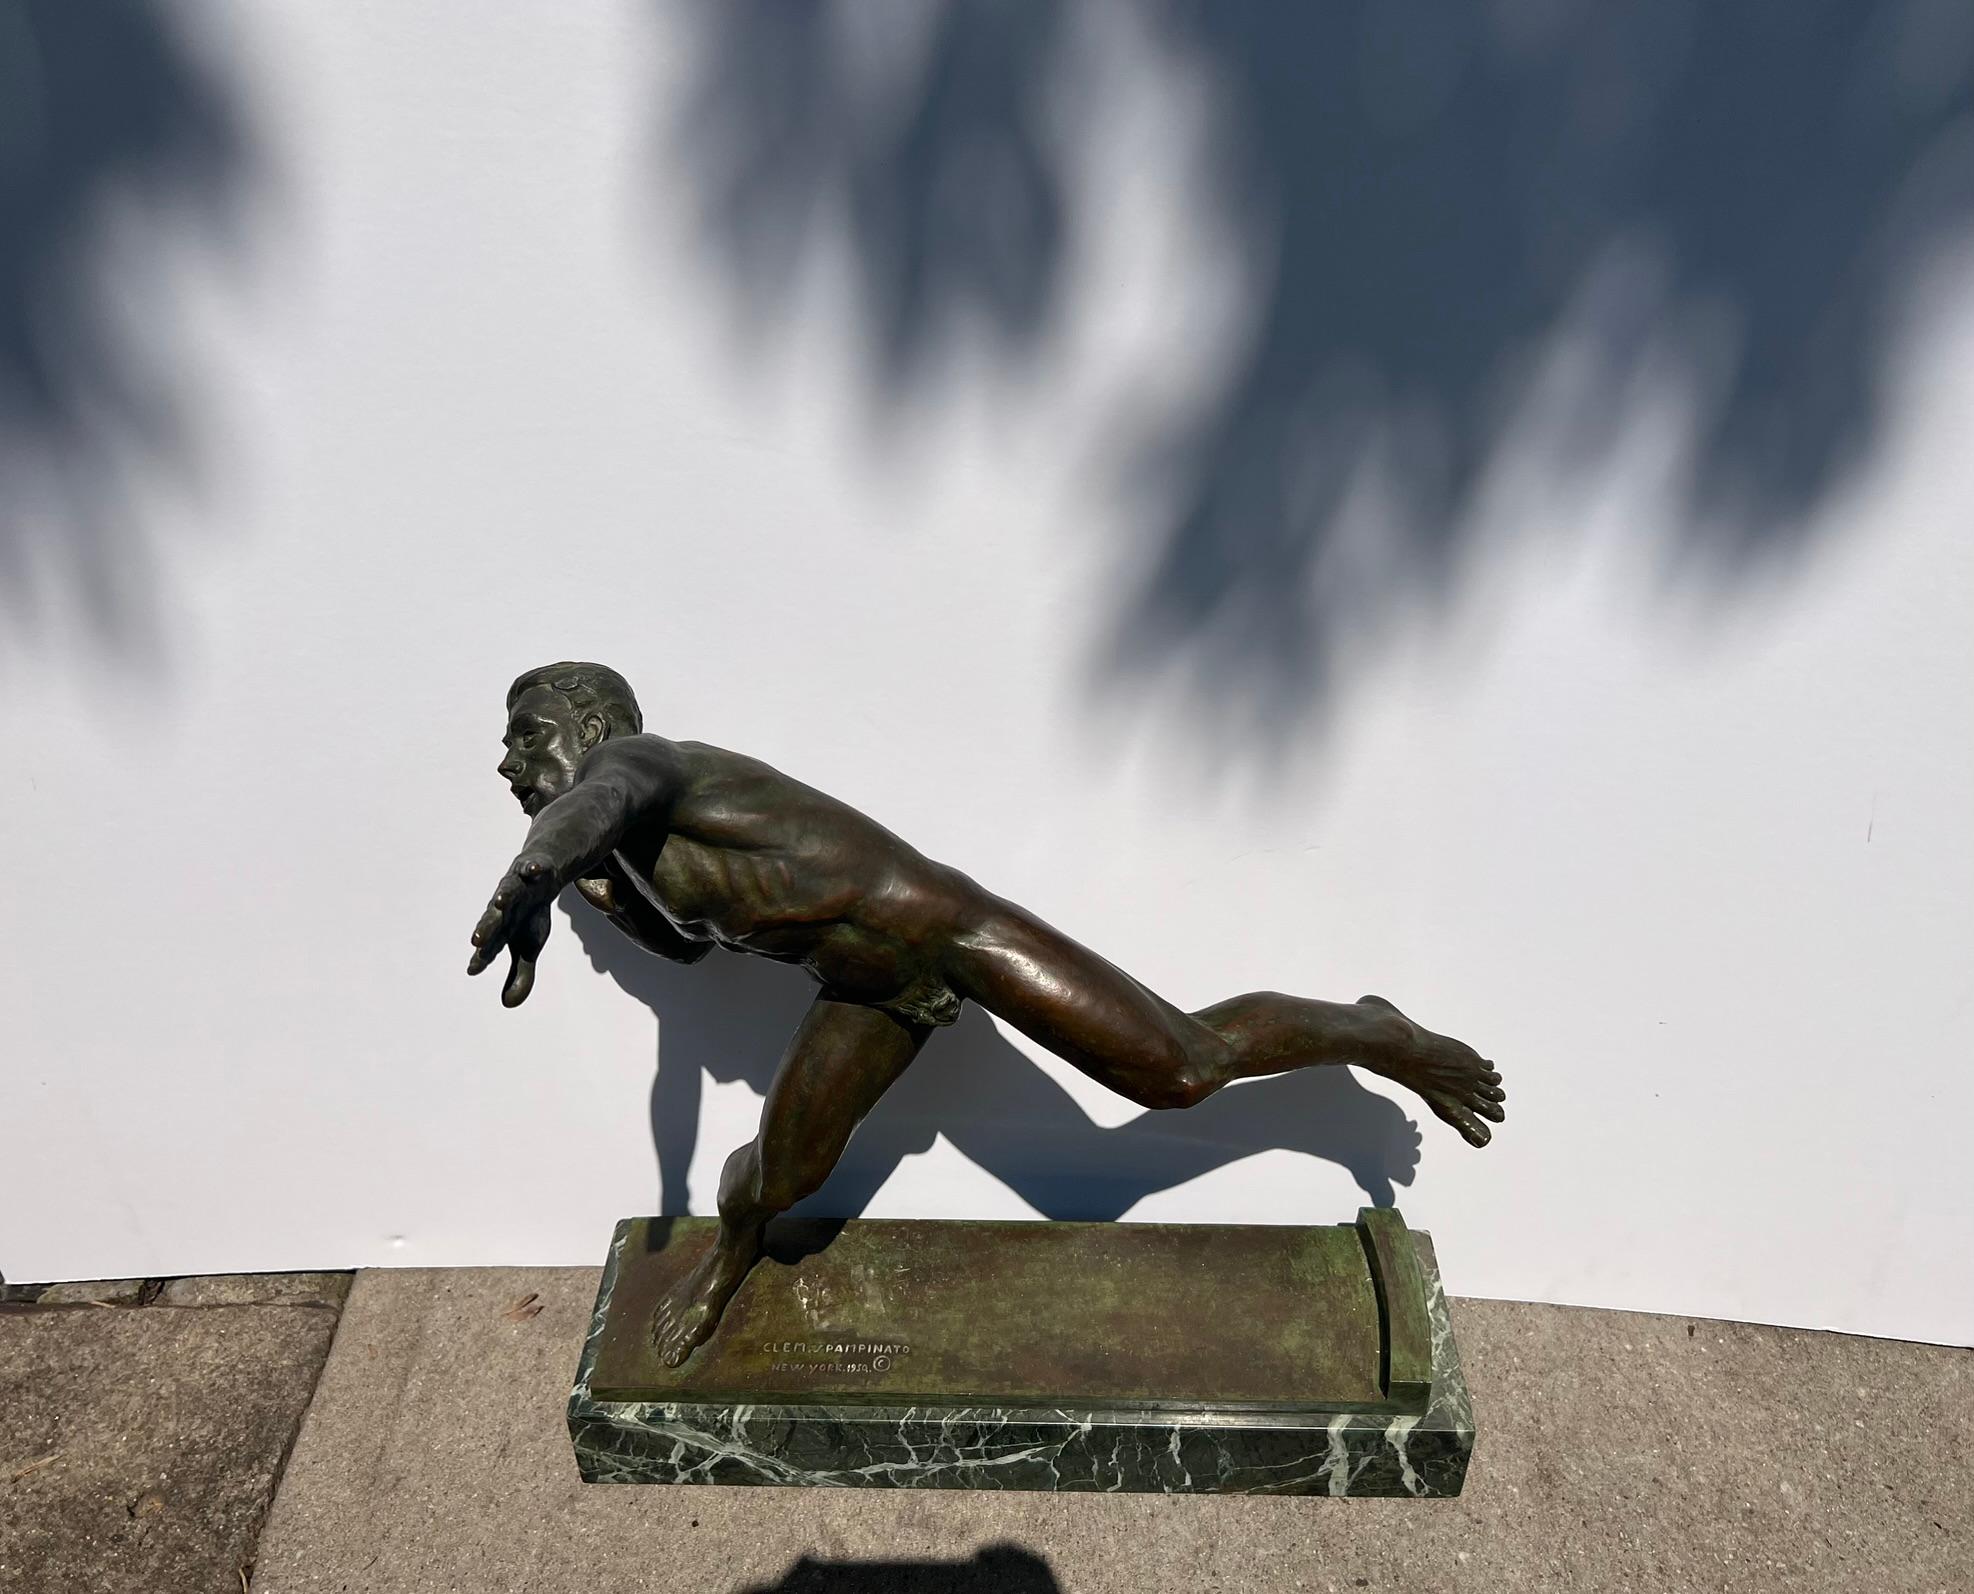 Amerikanische Bronzeskulptur eines männlichen nackten Athleten während eines Schuhputzes. – Sculpture von Clemente Spampinato